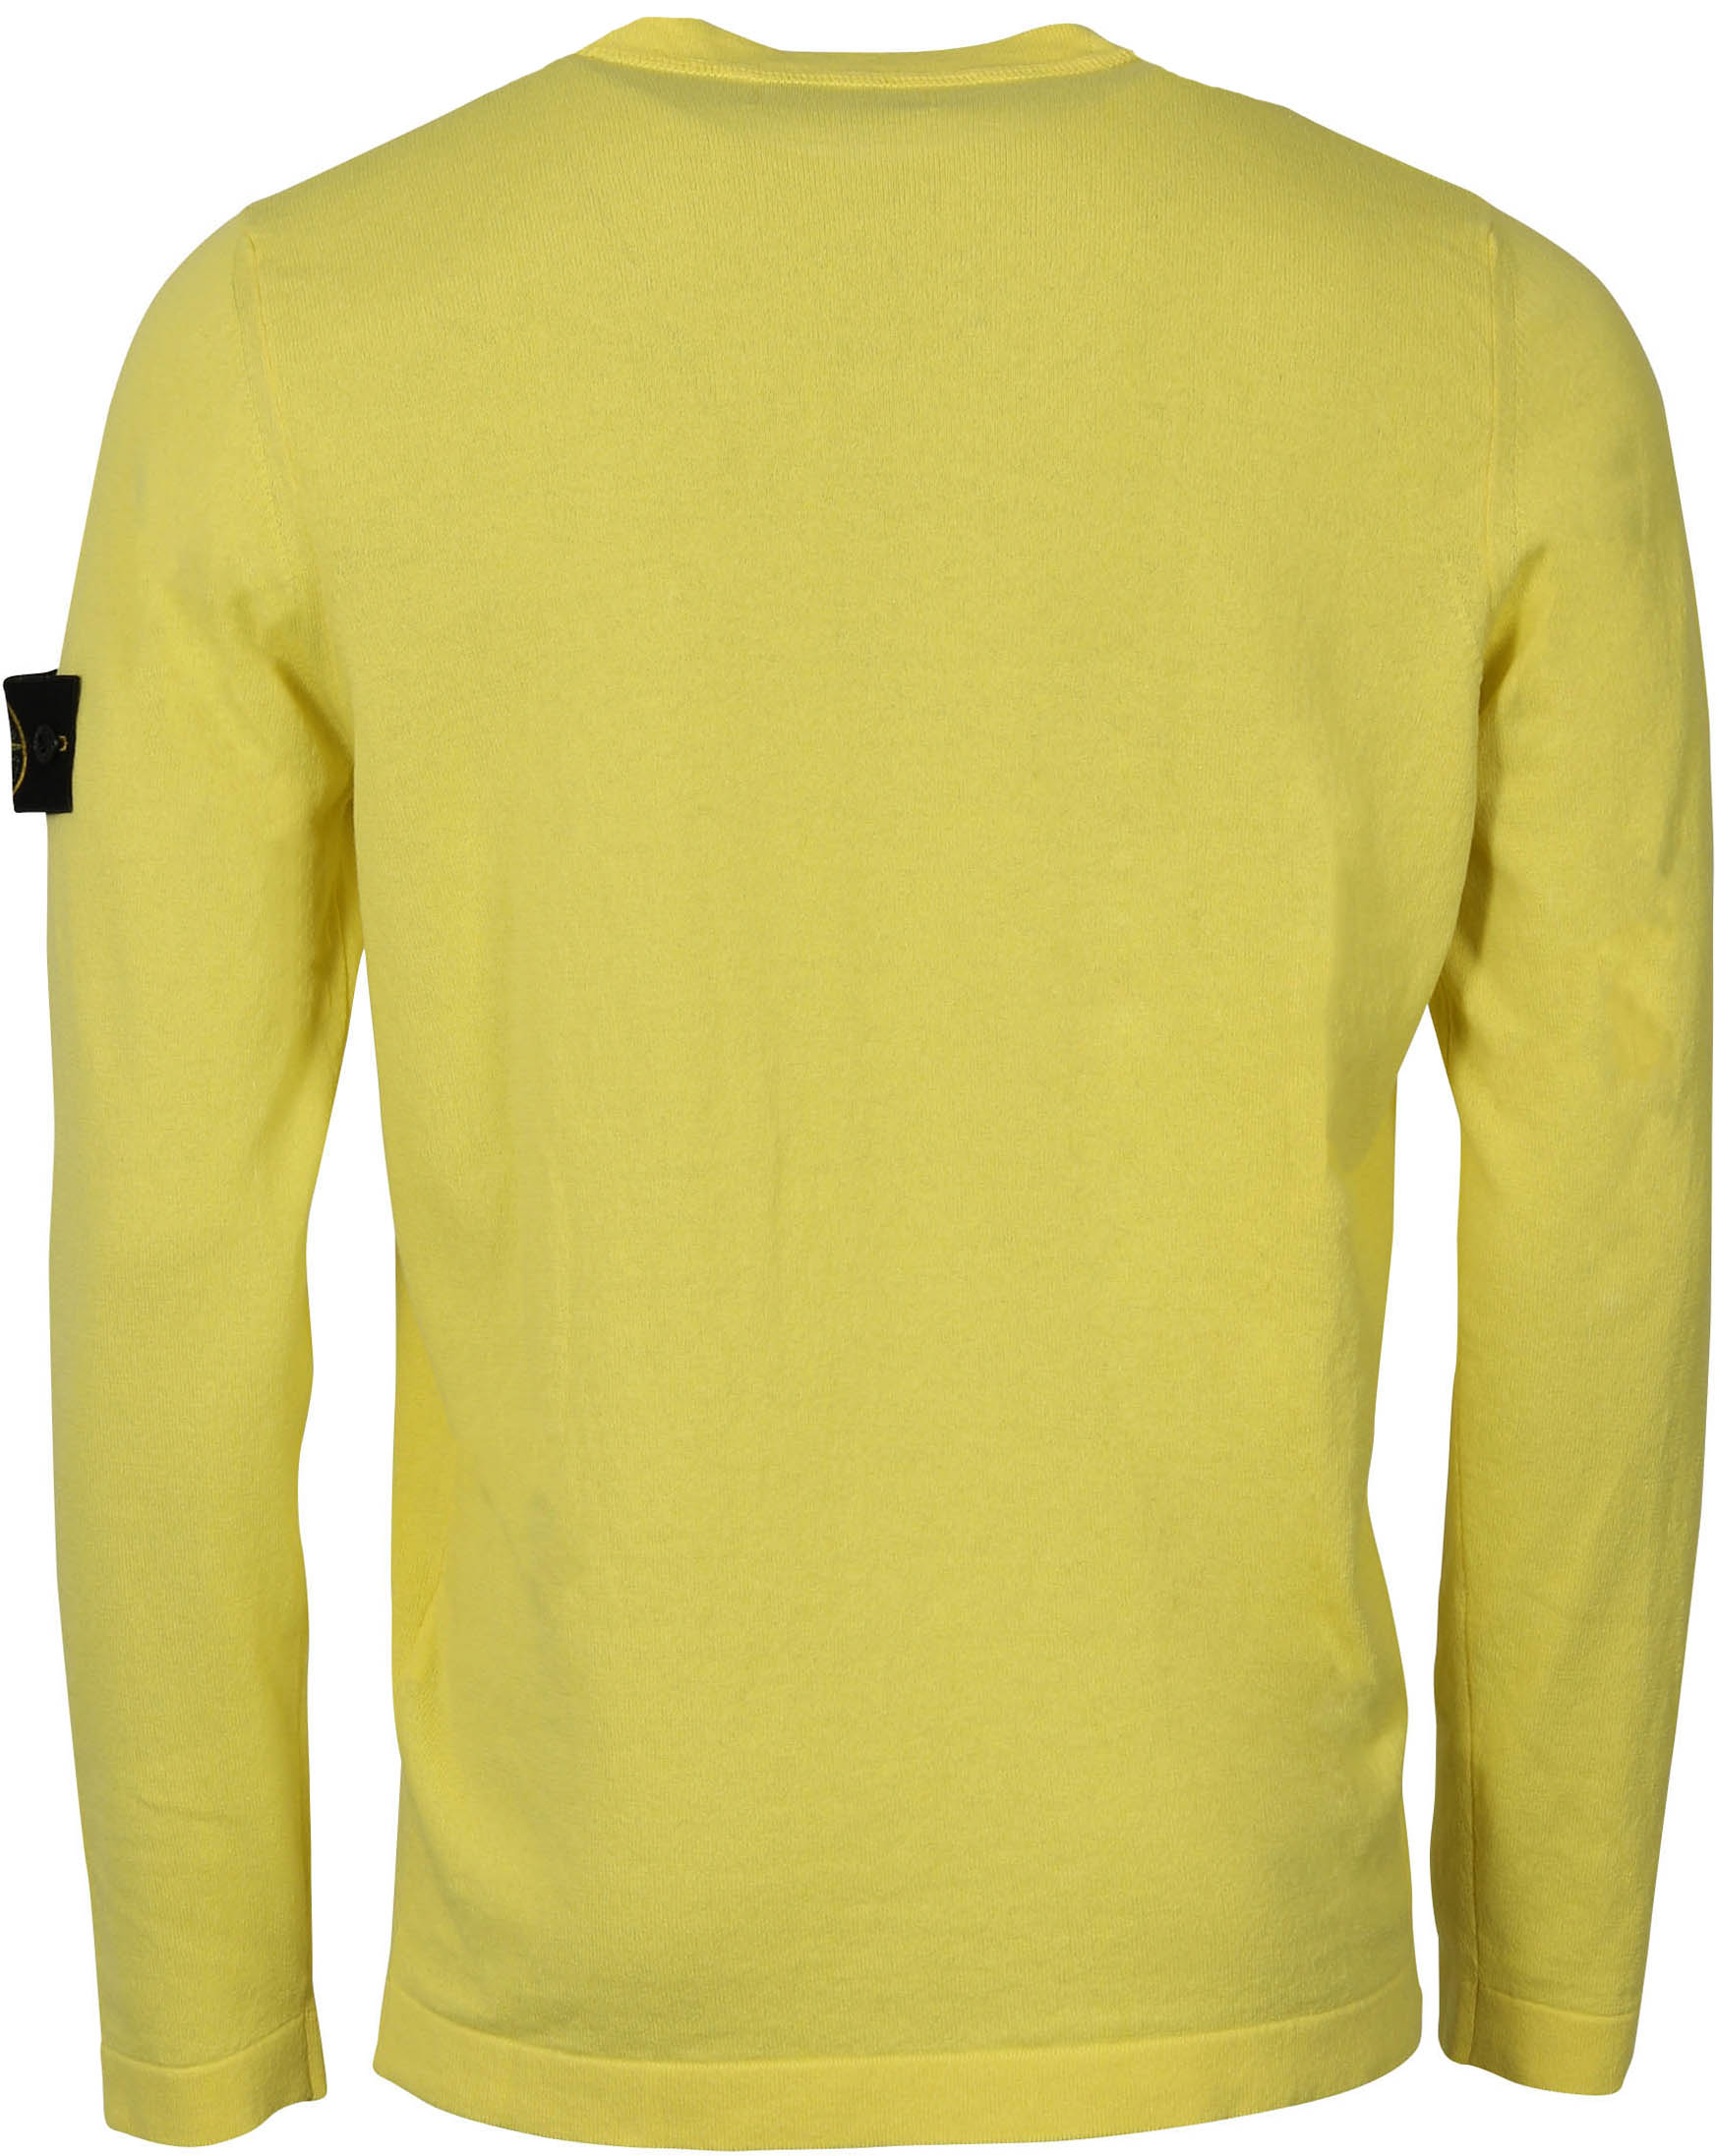 Stone Island Knit Sweater Yellow 3XL